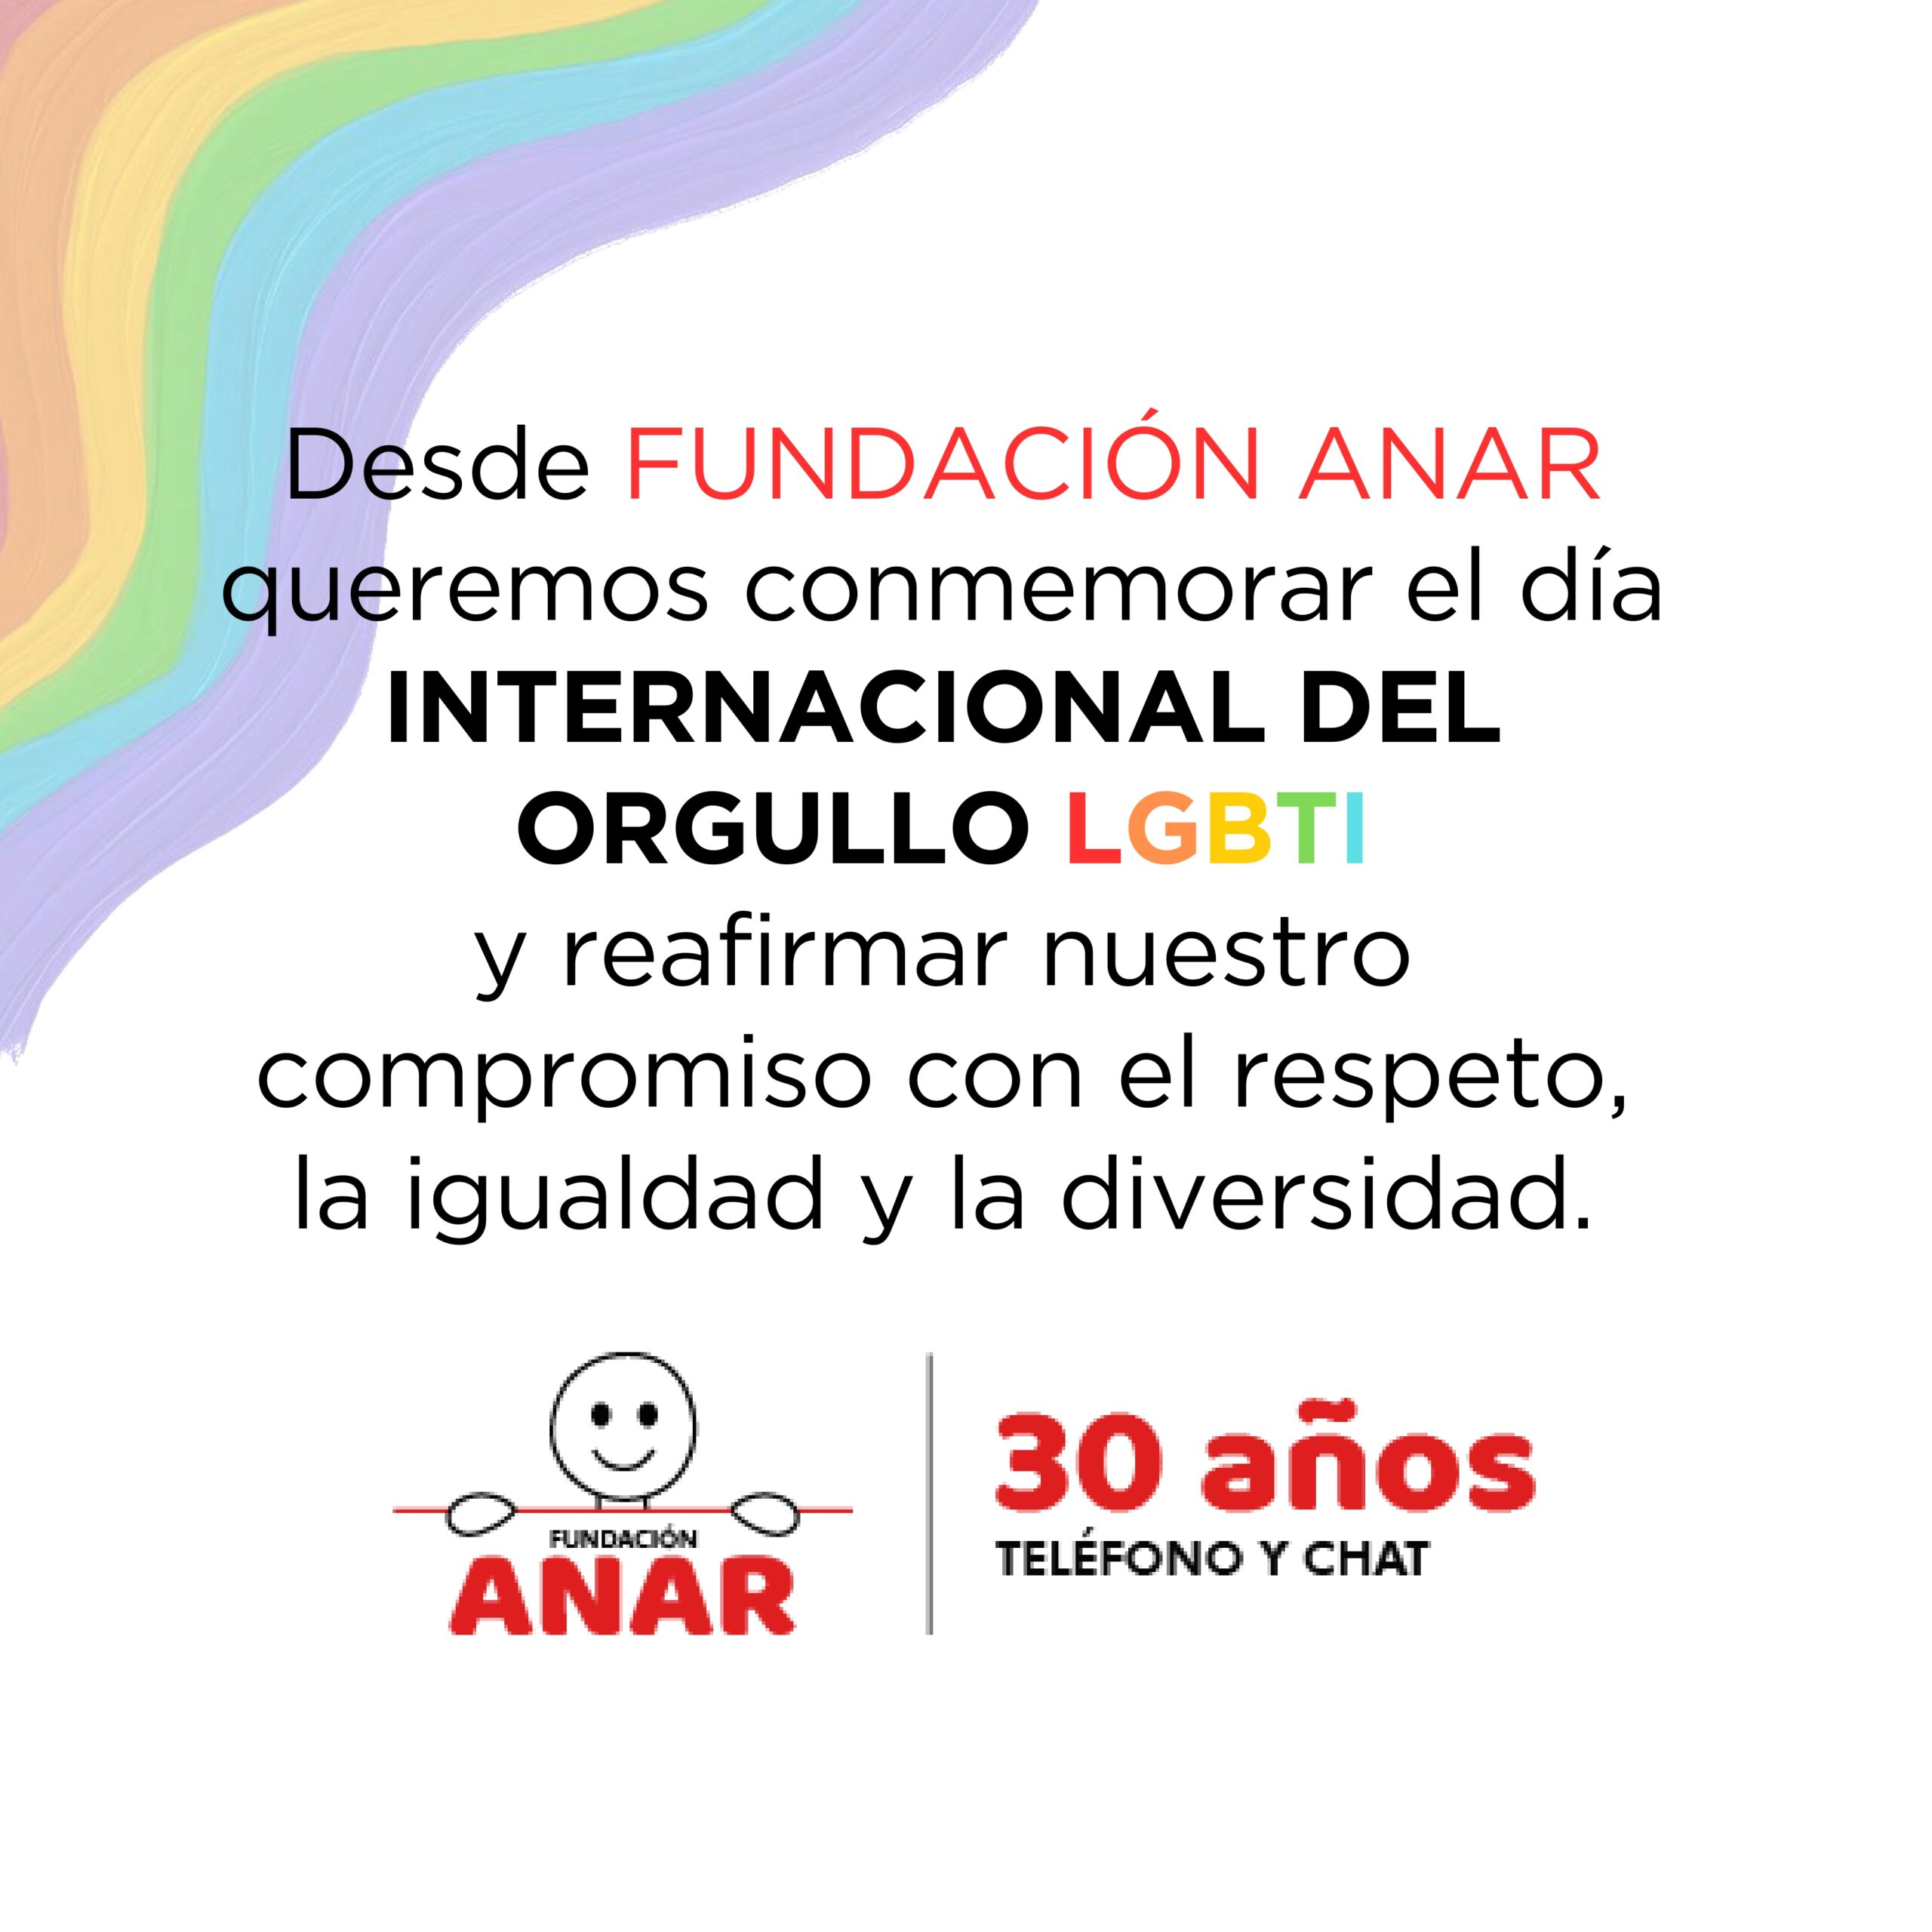 Fundación ANAR conmemora el día internacional del orgullo LGBTI